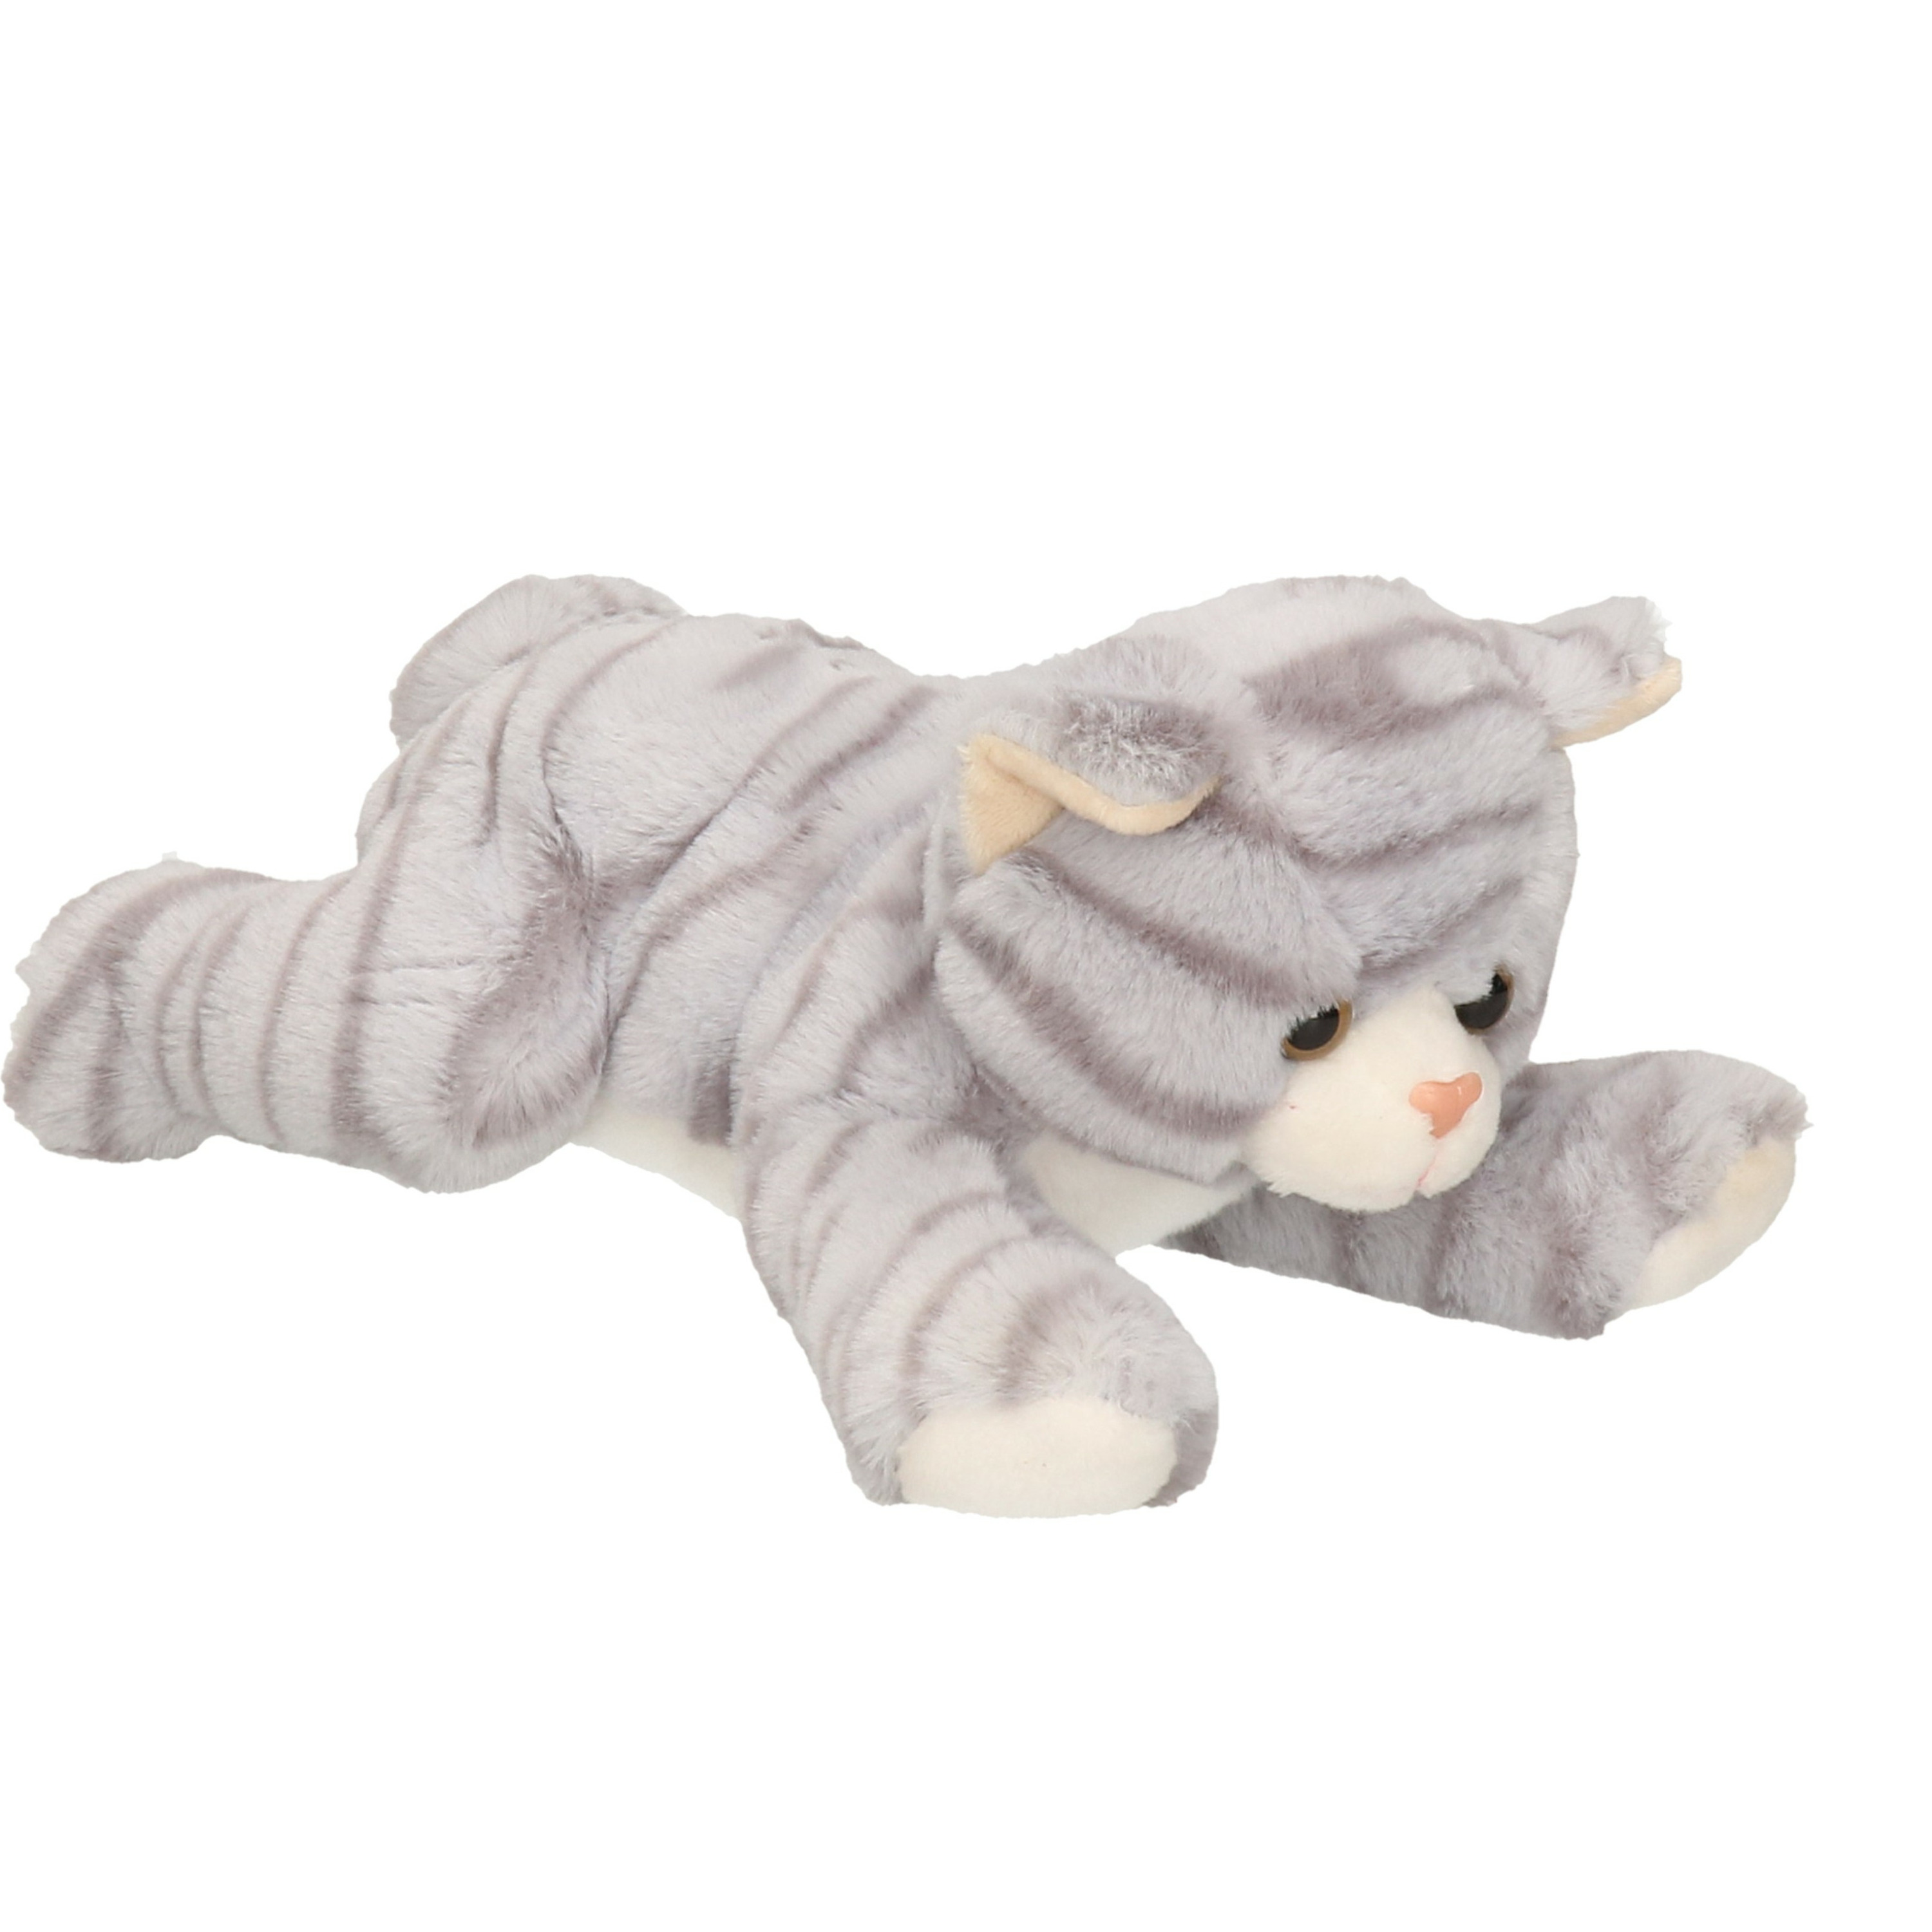 Pluche speelgoed poes/kat knuffeldier grijs 25 cm